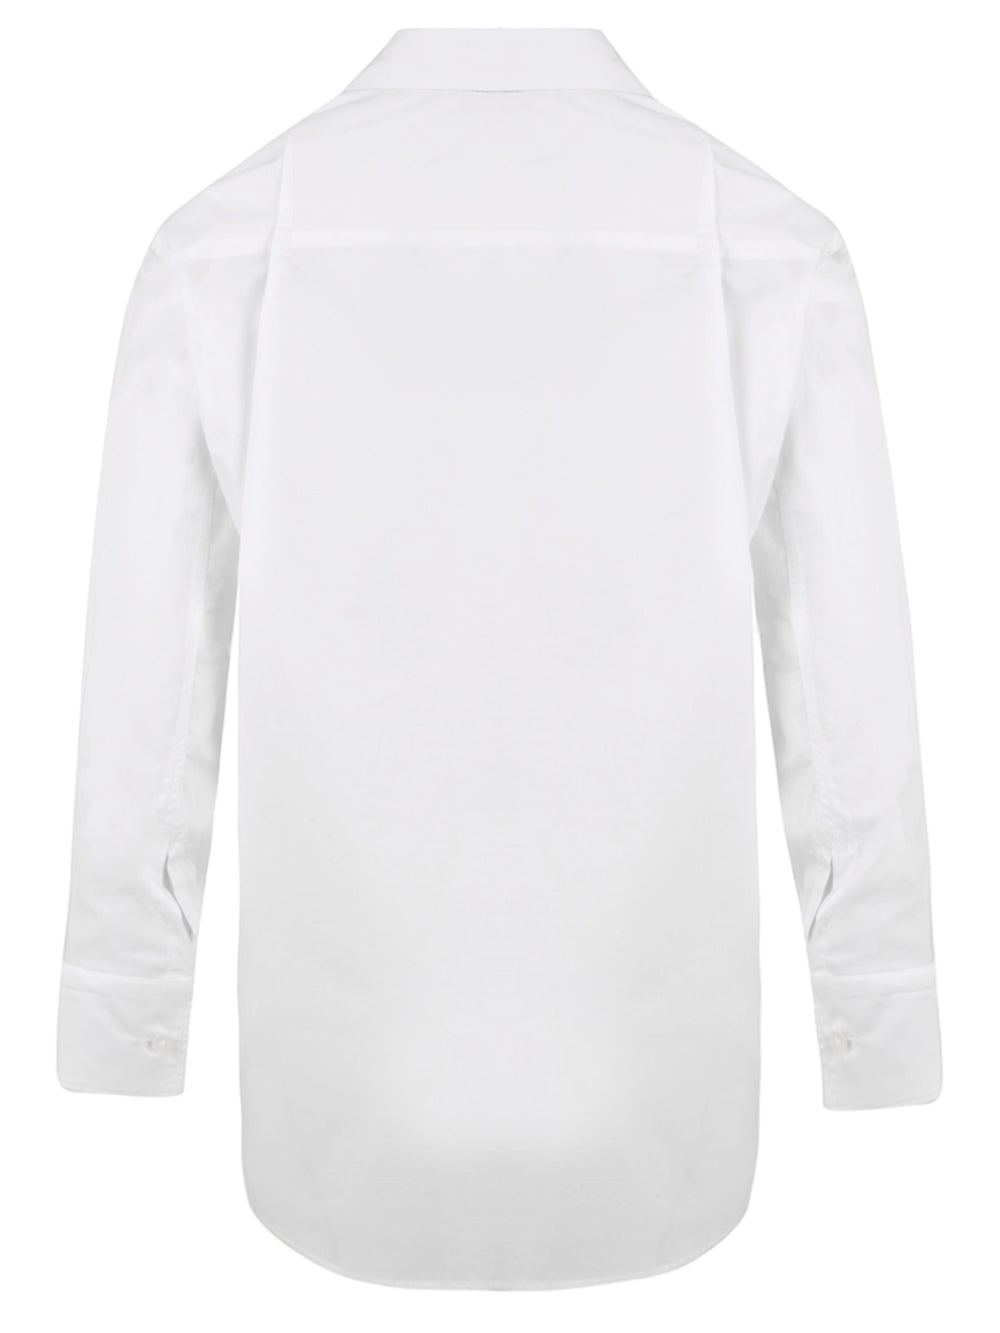 Camicia HINNOMINATE Donna HMABW00238 Bianco